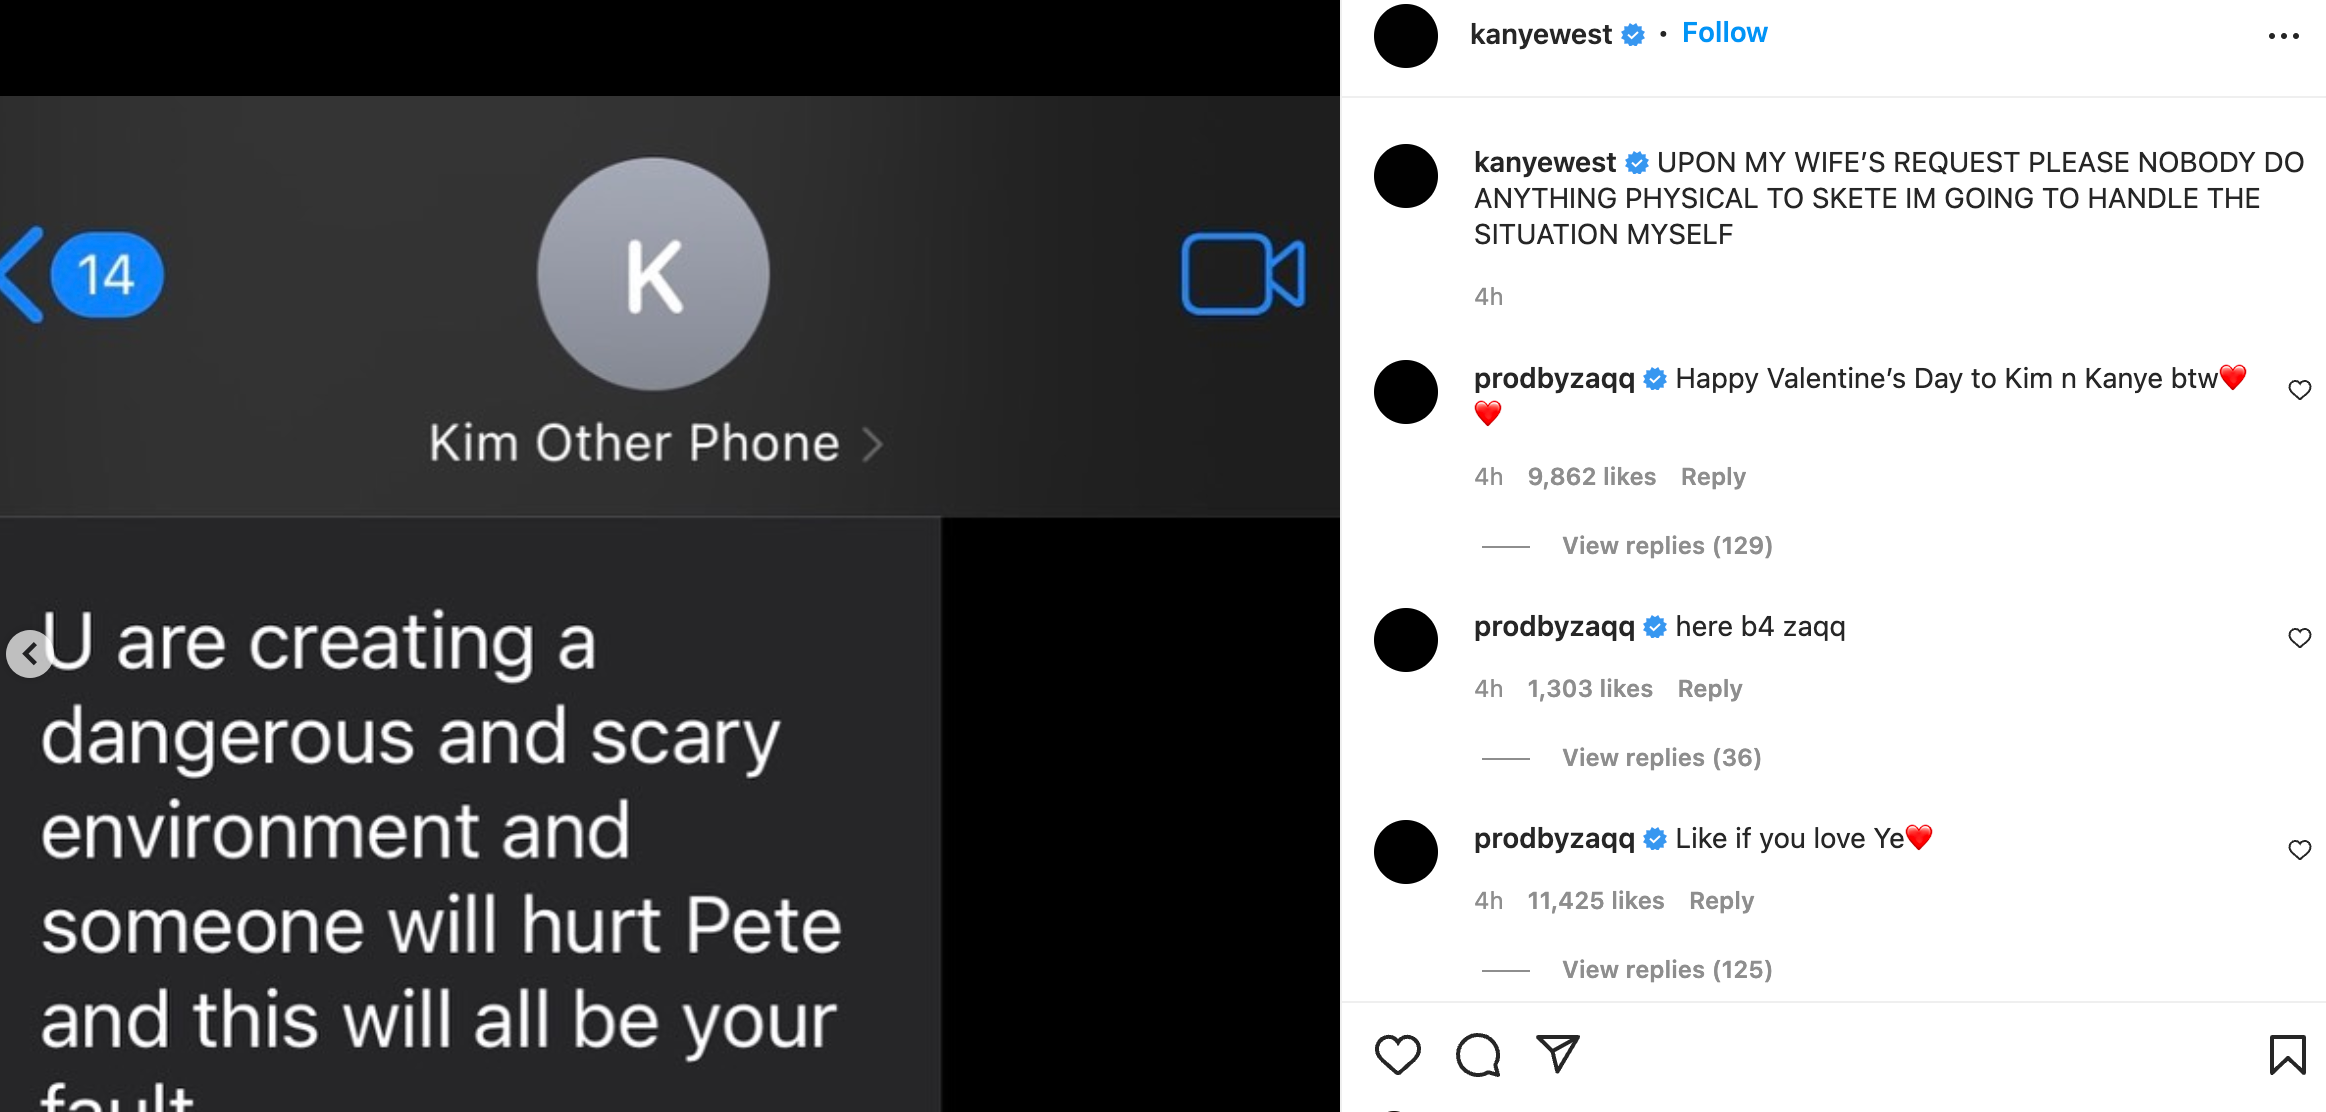 “Alguien lastimará a Pete y todo esto será tu culpa”, escribió Kim Kardashian en uno de sus mensajes de texto para su exesposo